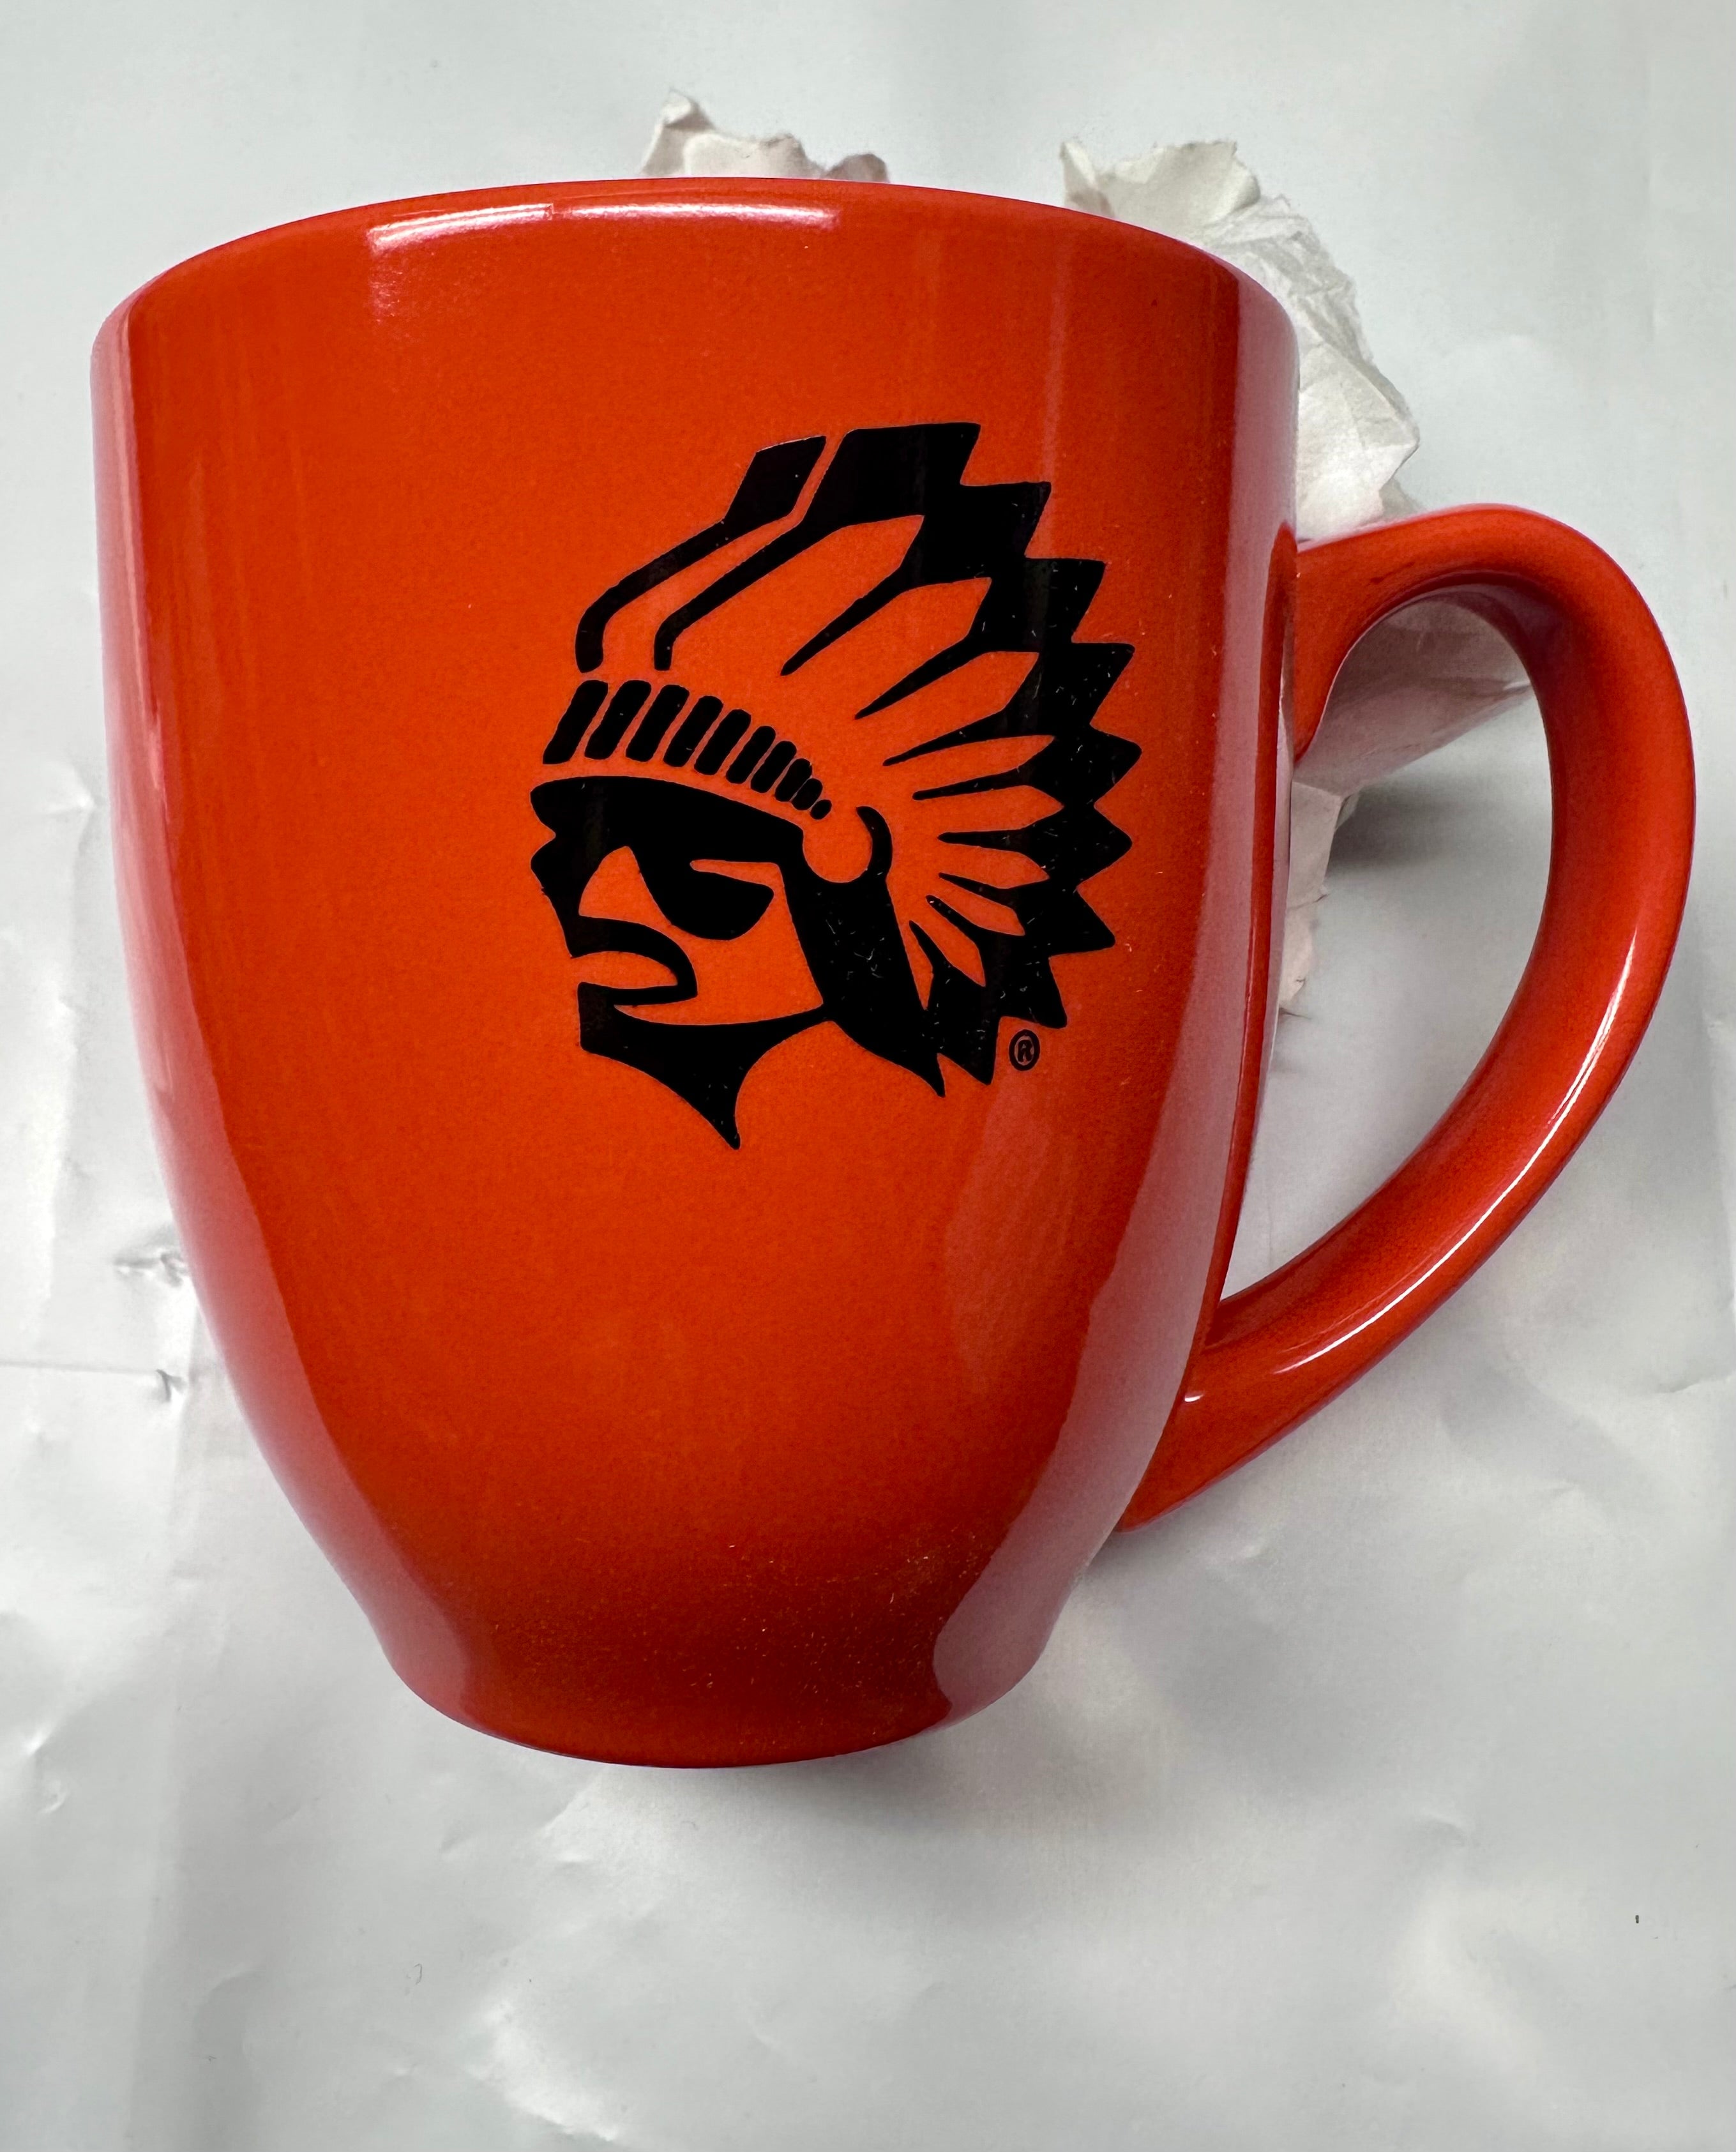 Orange Mug with Black Logo